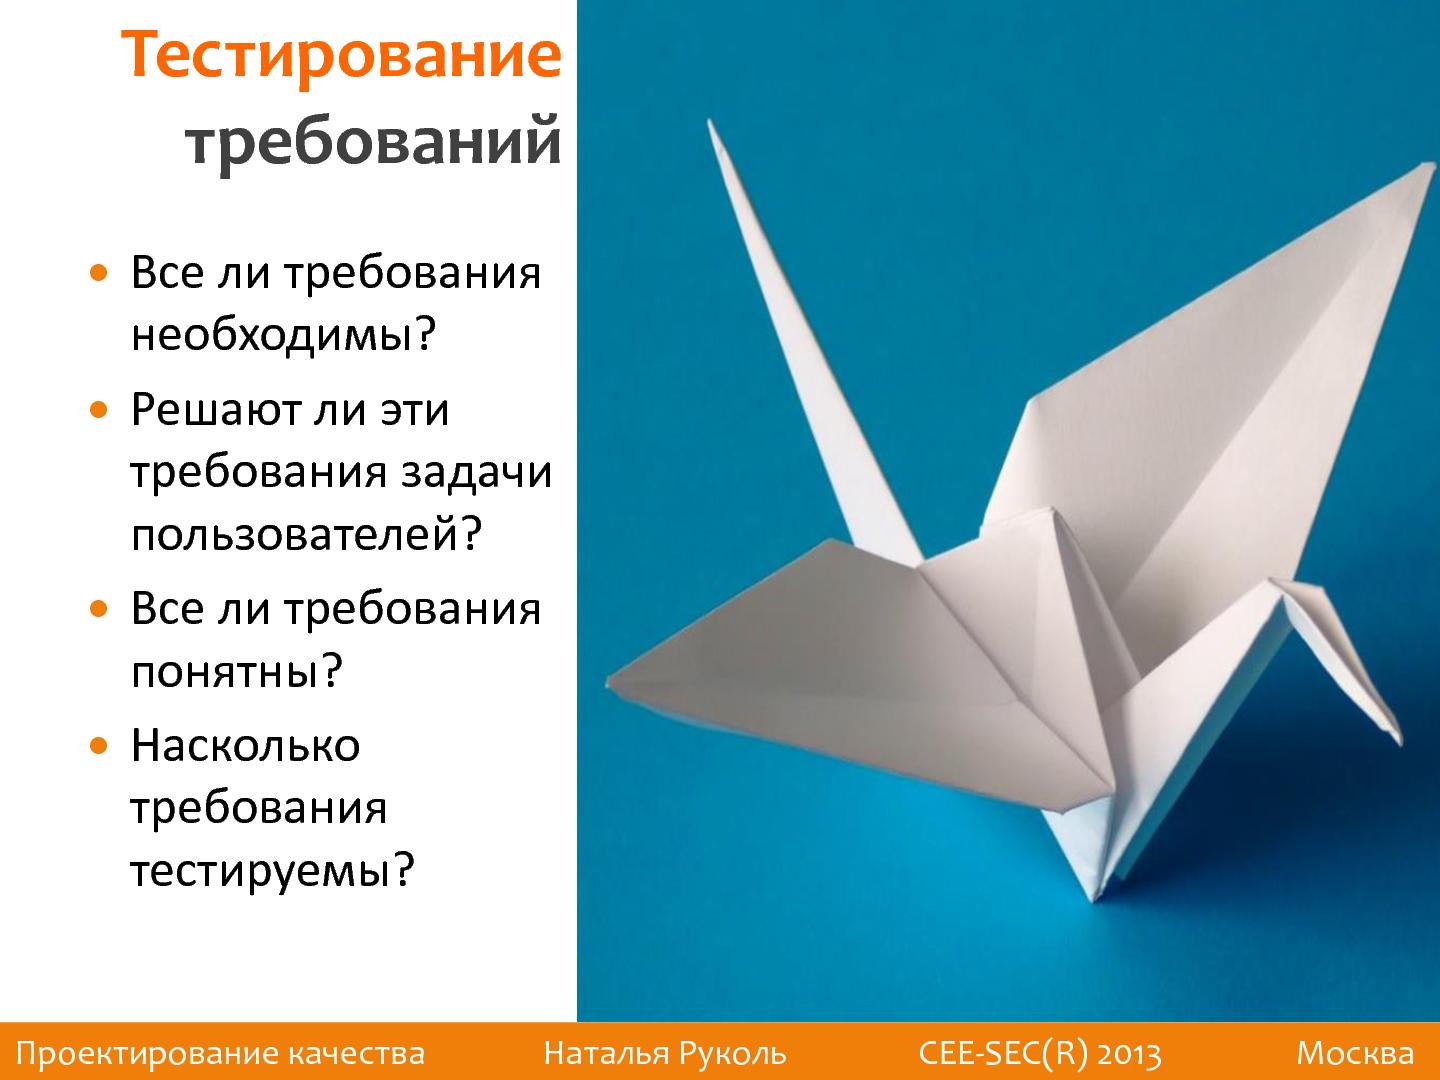 Файл:Проектирование качества (Наталья Руколь, SECR-2013).pdf